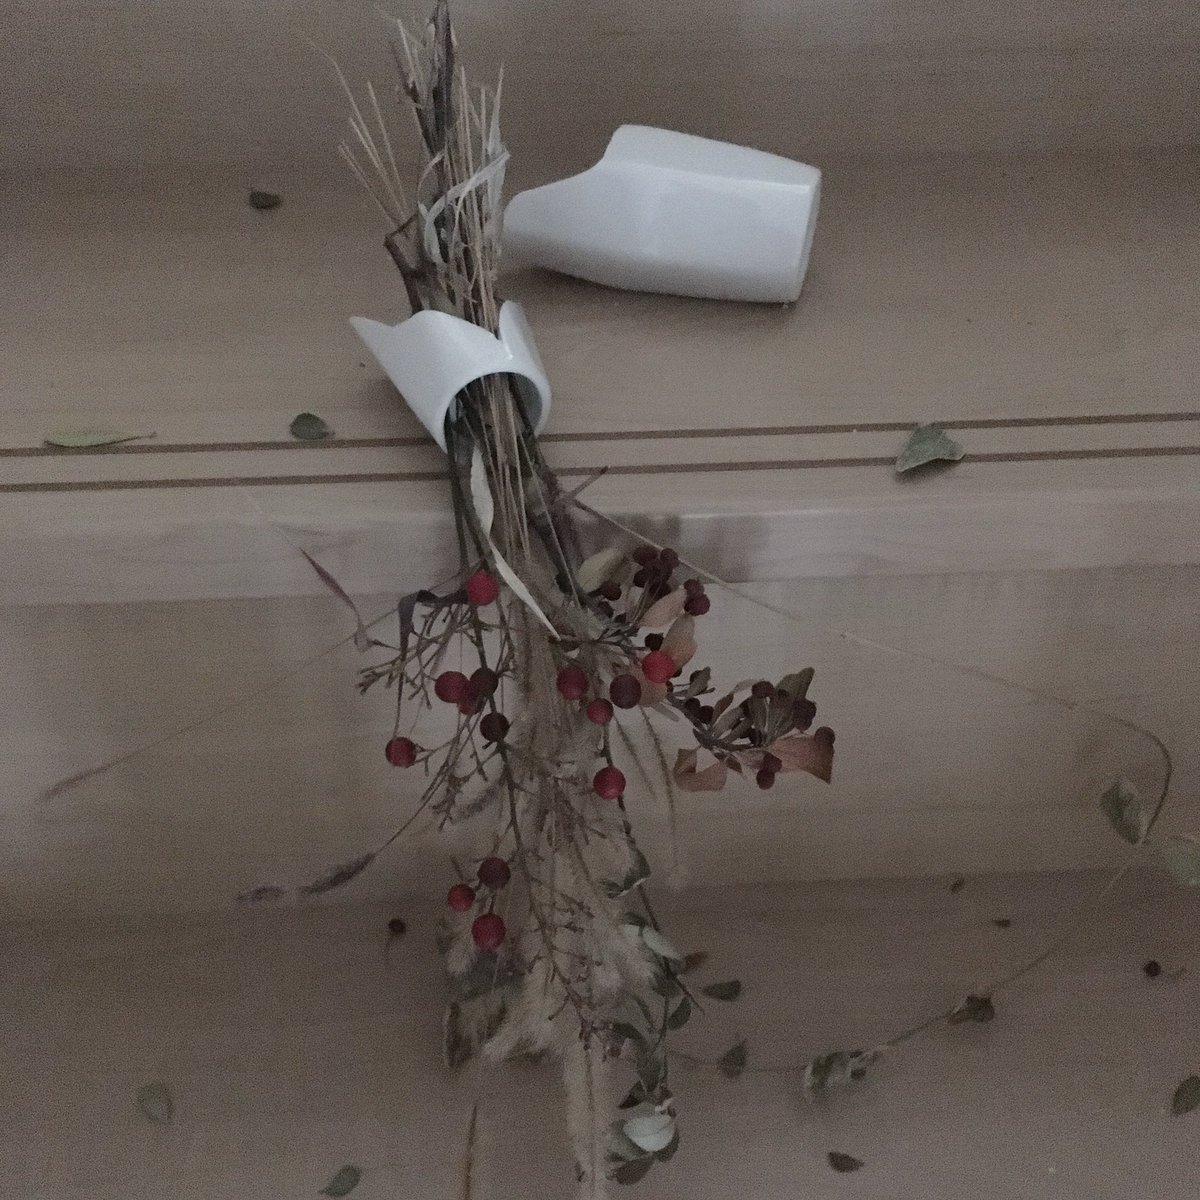 オオムラツヅミ Twitterissa 大好きな花瓶が割れた 突然来る地震ってこんなに怖いんだな スリッパの大事さが沁みた